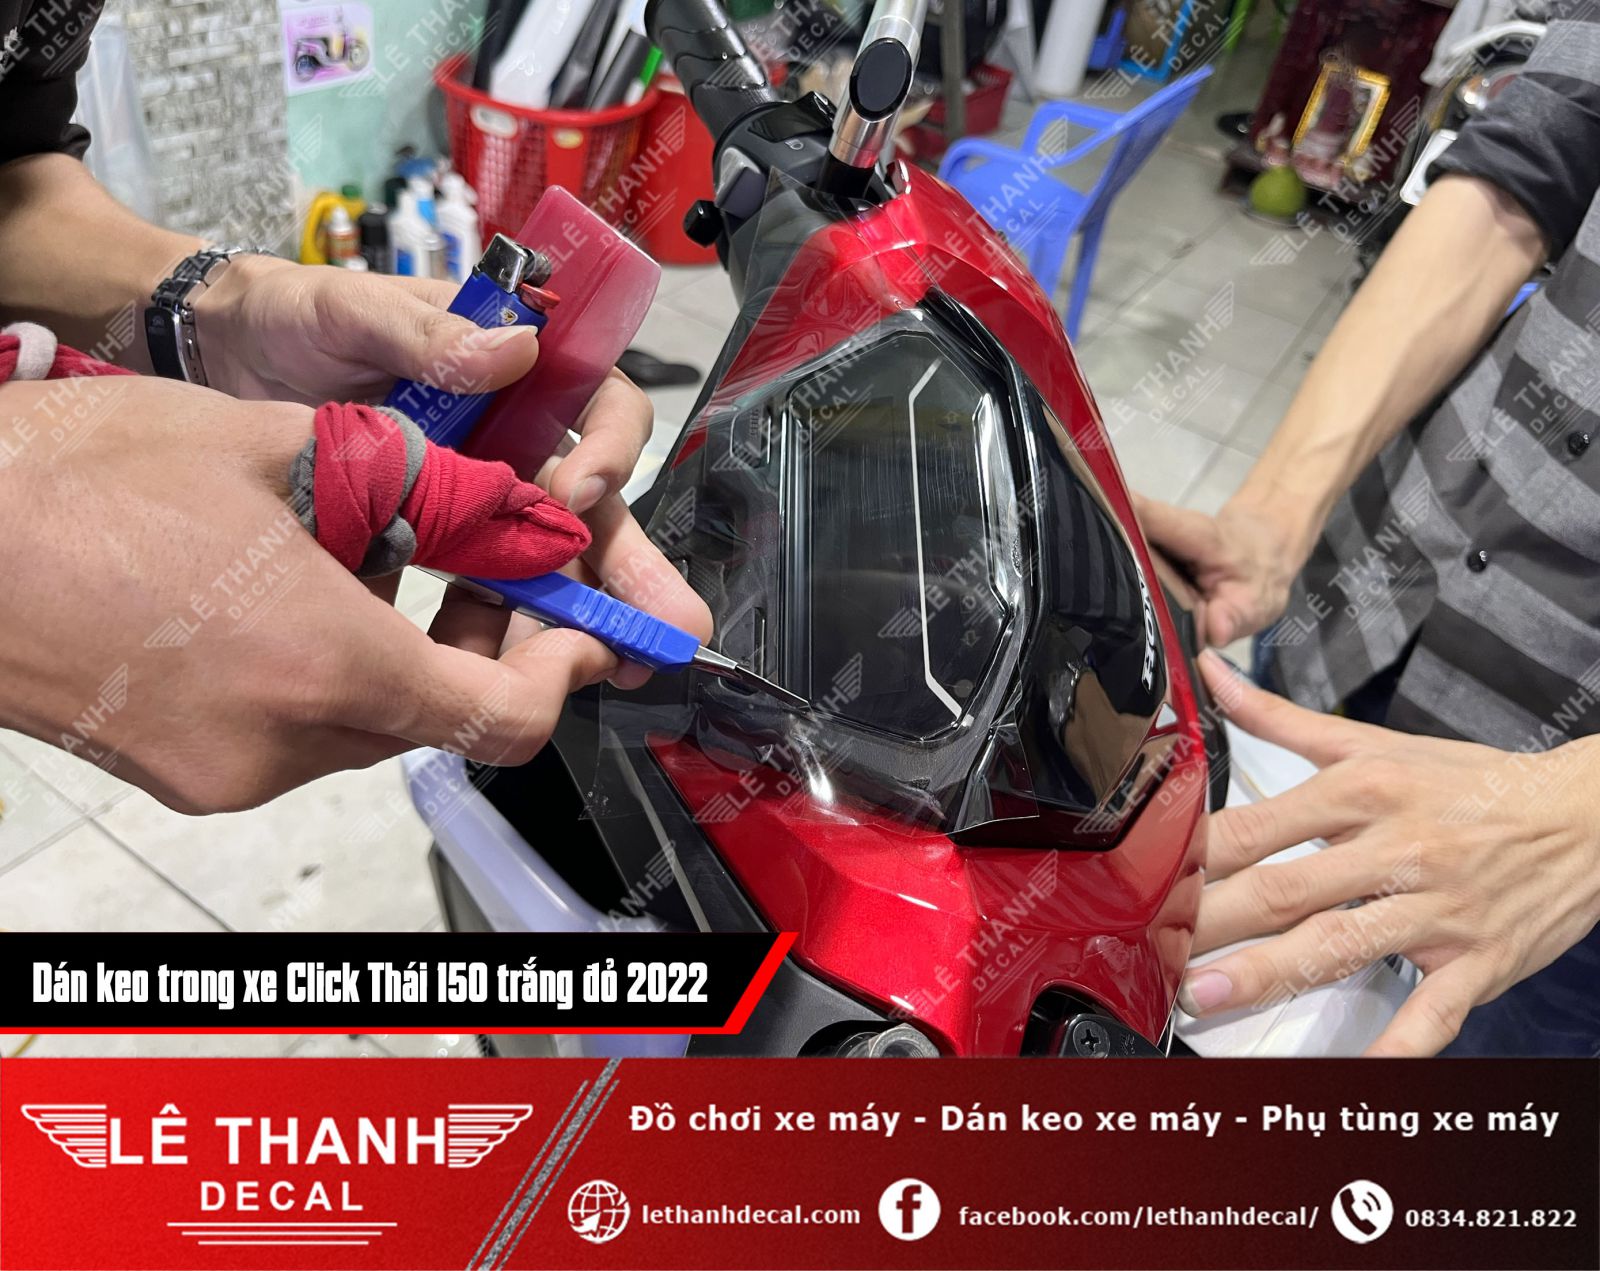 Dán keo trong xe máy Click Thái 150 trắng đỏ 2022